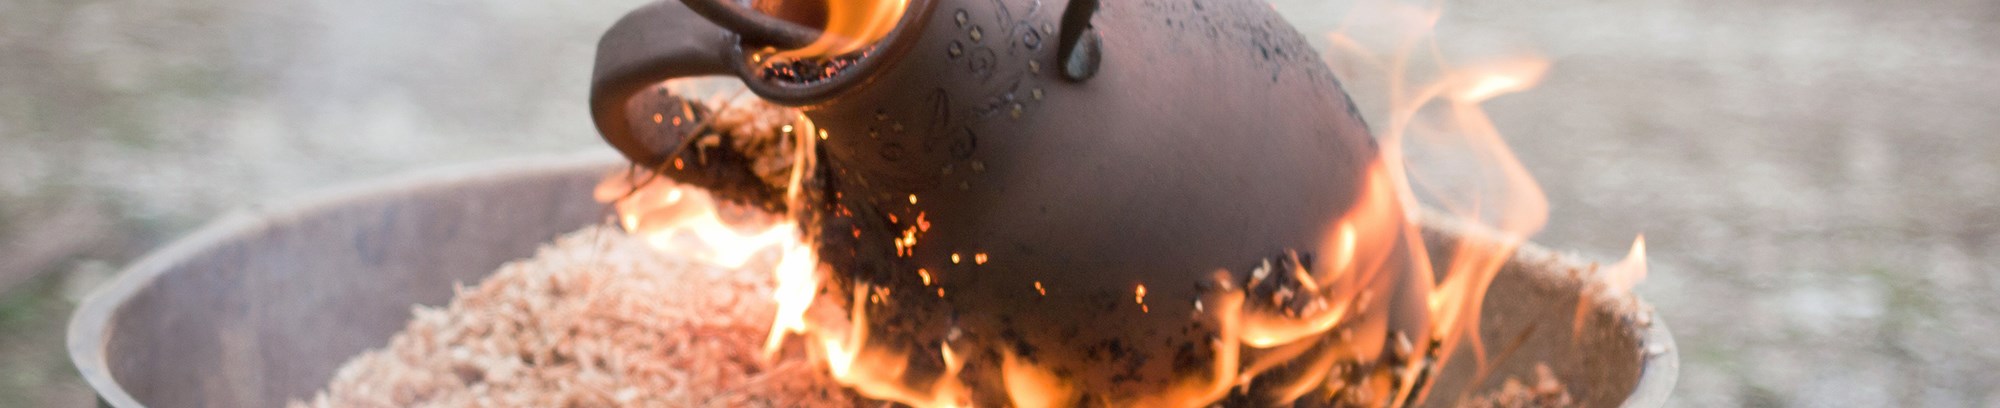 Lær om Raku brænding og keramik hos FOF Sydjylland